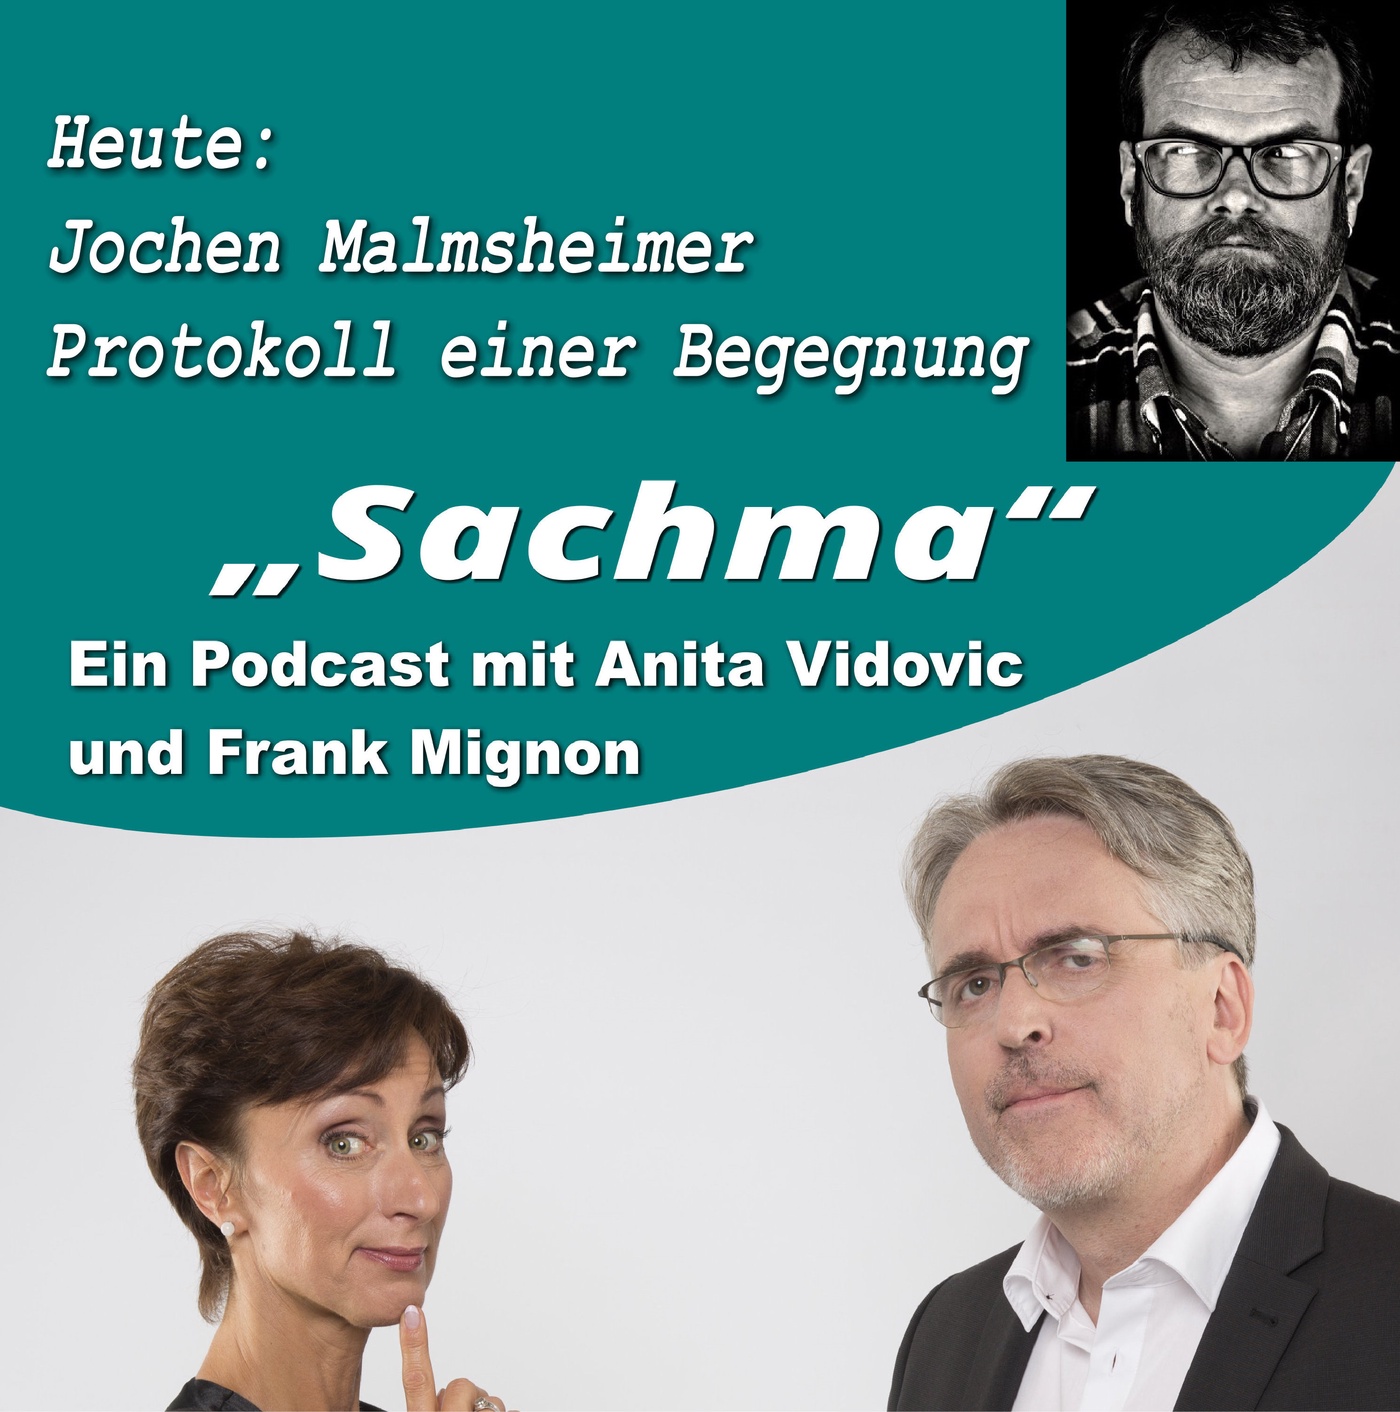 Sachma - Der Podcast - Mit Jochen Malmsheimer